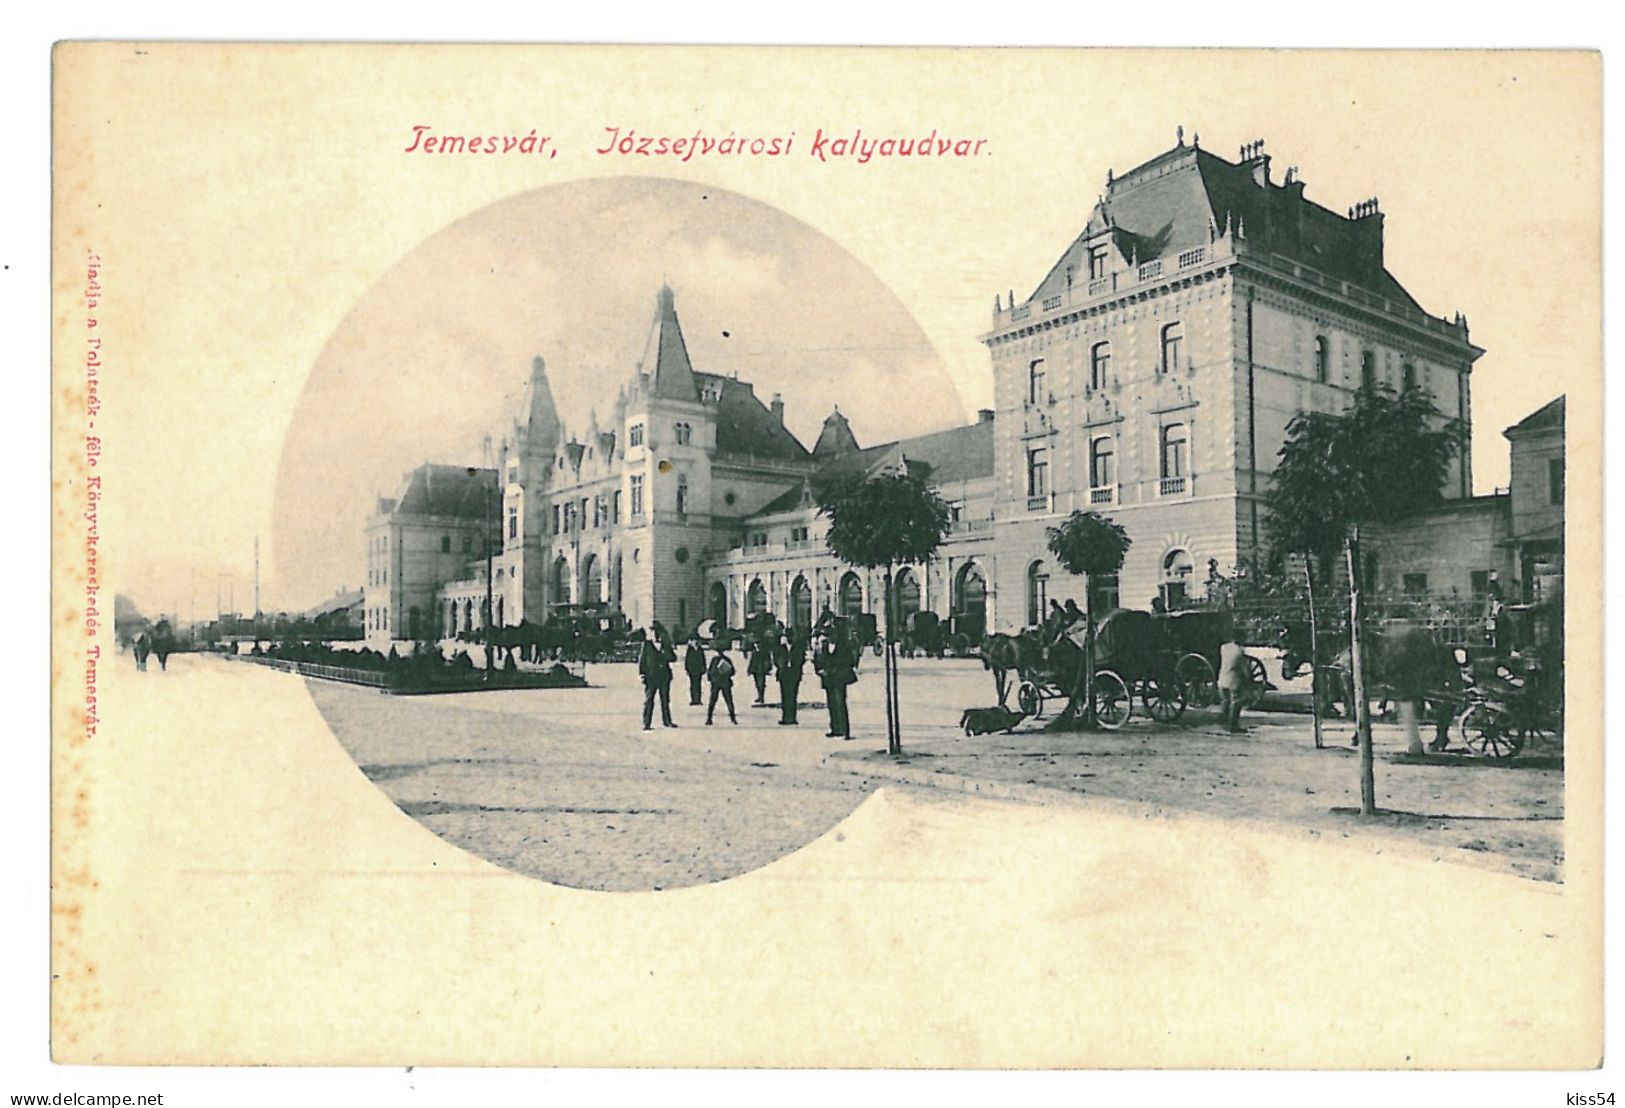 RO 47 - 11171 TIMISOARA, Romania, Railway Station - Old Postcard - Unused - Romania